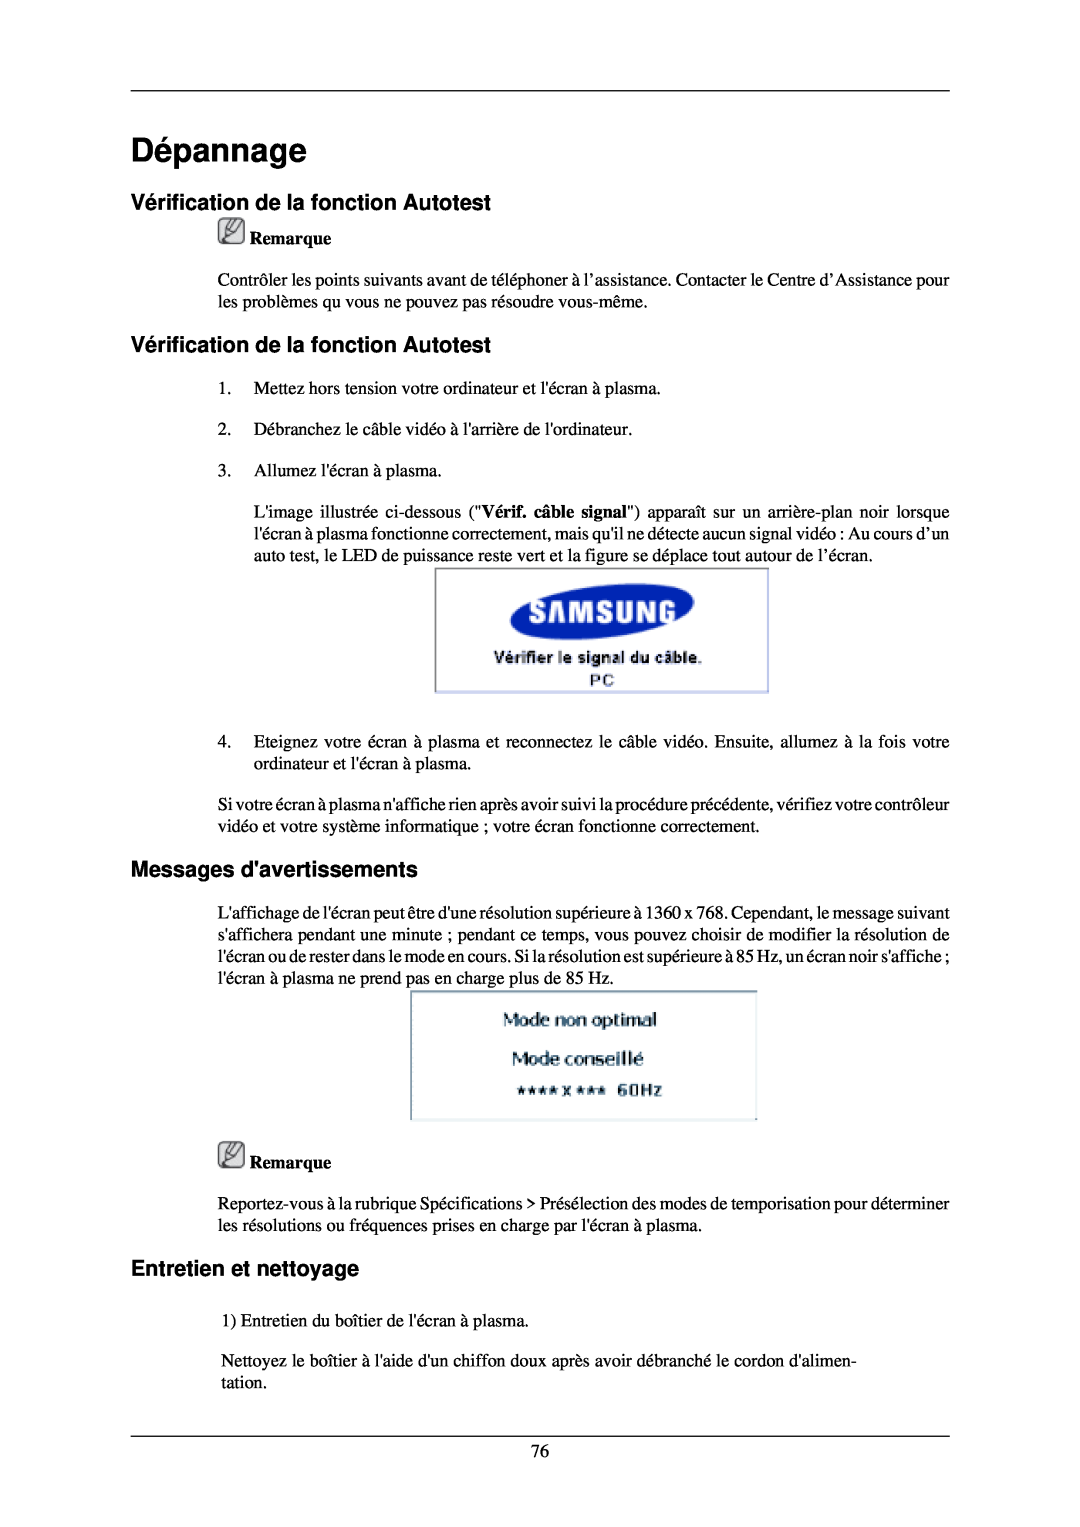 Samsung PH42KLTLBC/EN Dépannage, Vérification de la fonction Autotest, Messages davertissements, Entretien et nettoyage 